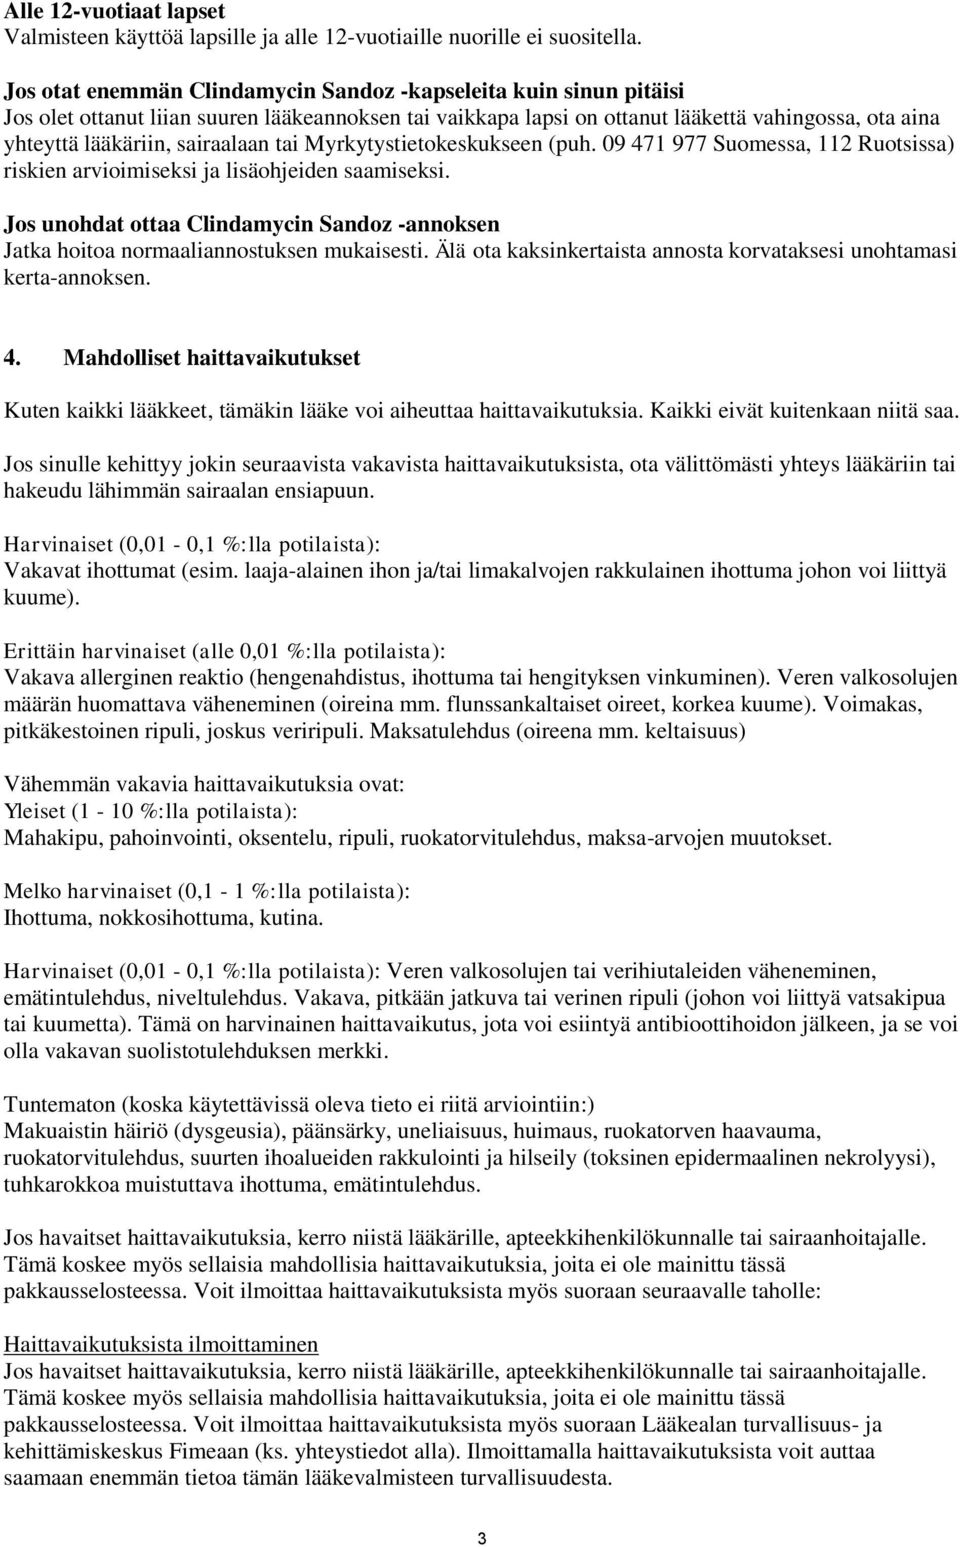 sairaalaan tai Myrkytystietokeskukseen (puh. 09 471 977 Suomessa, 112 Ruotsissa) riskien arvioimiseksi ja lisäohjeiden saamiseksi.